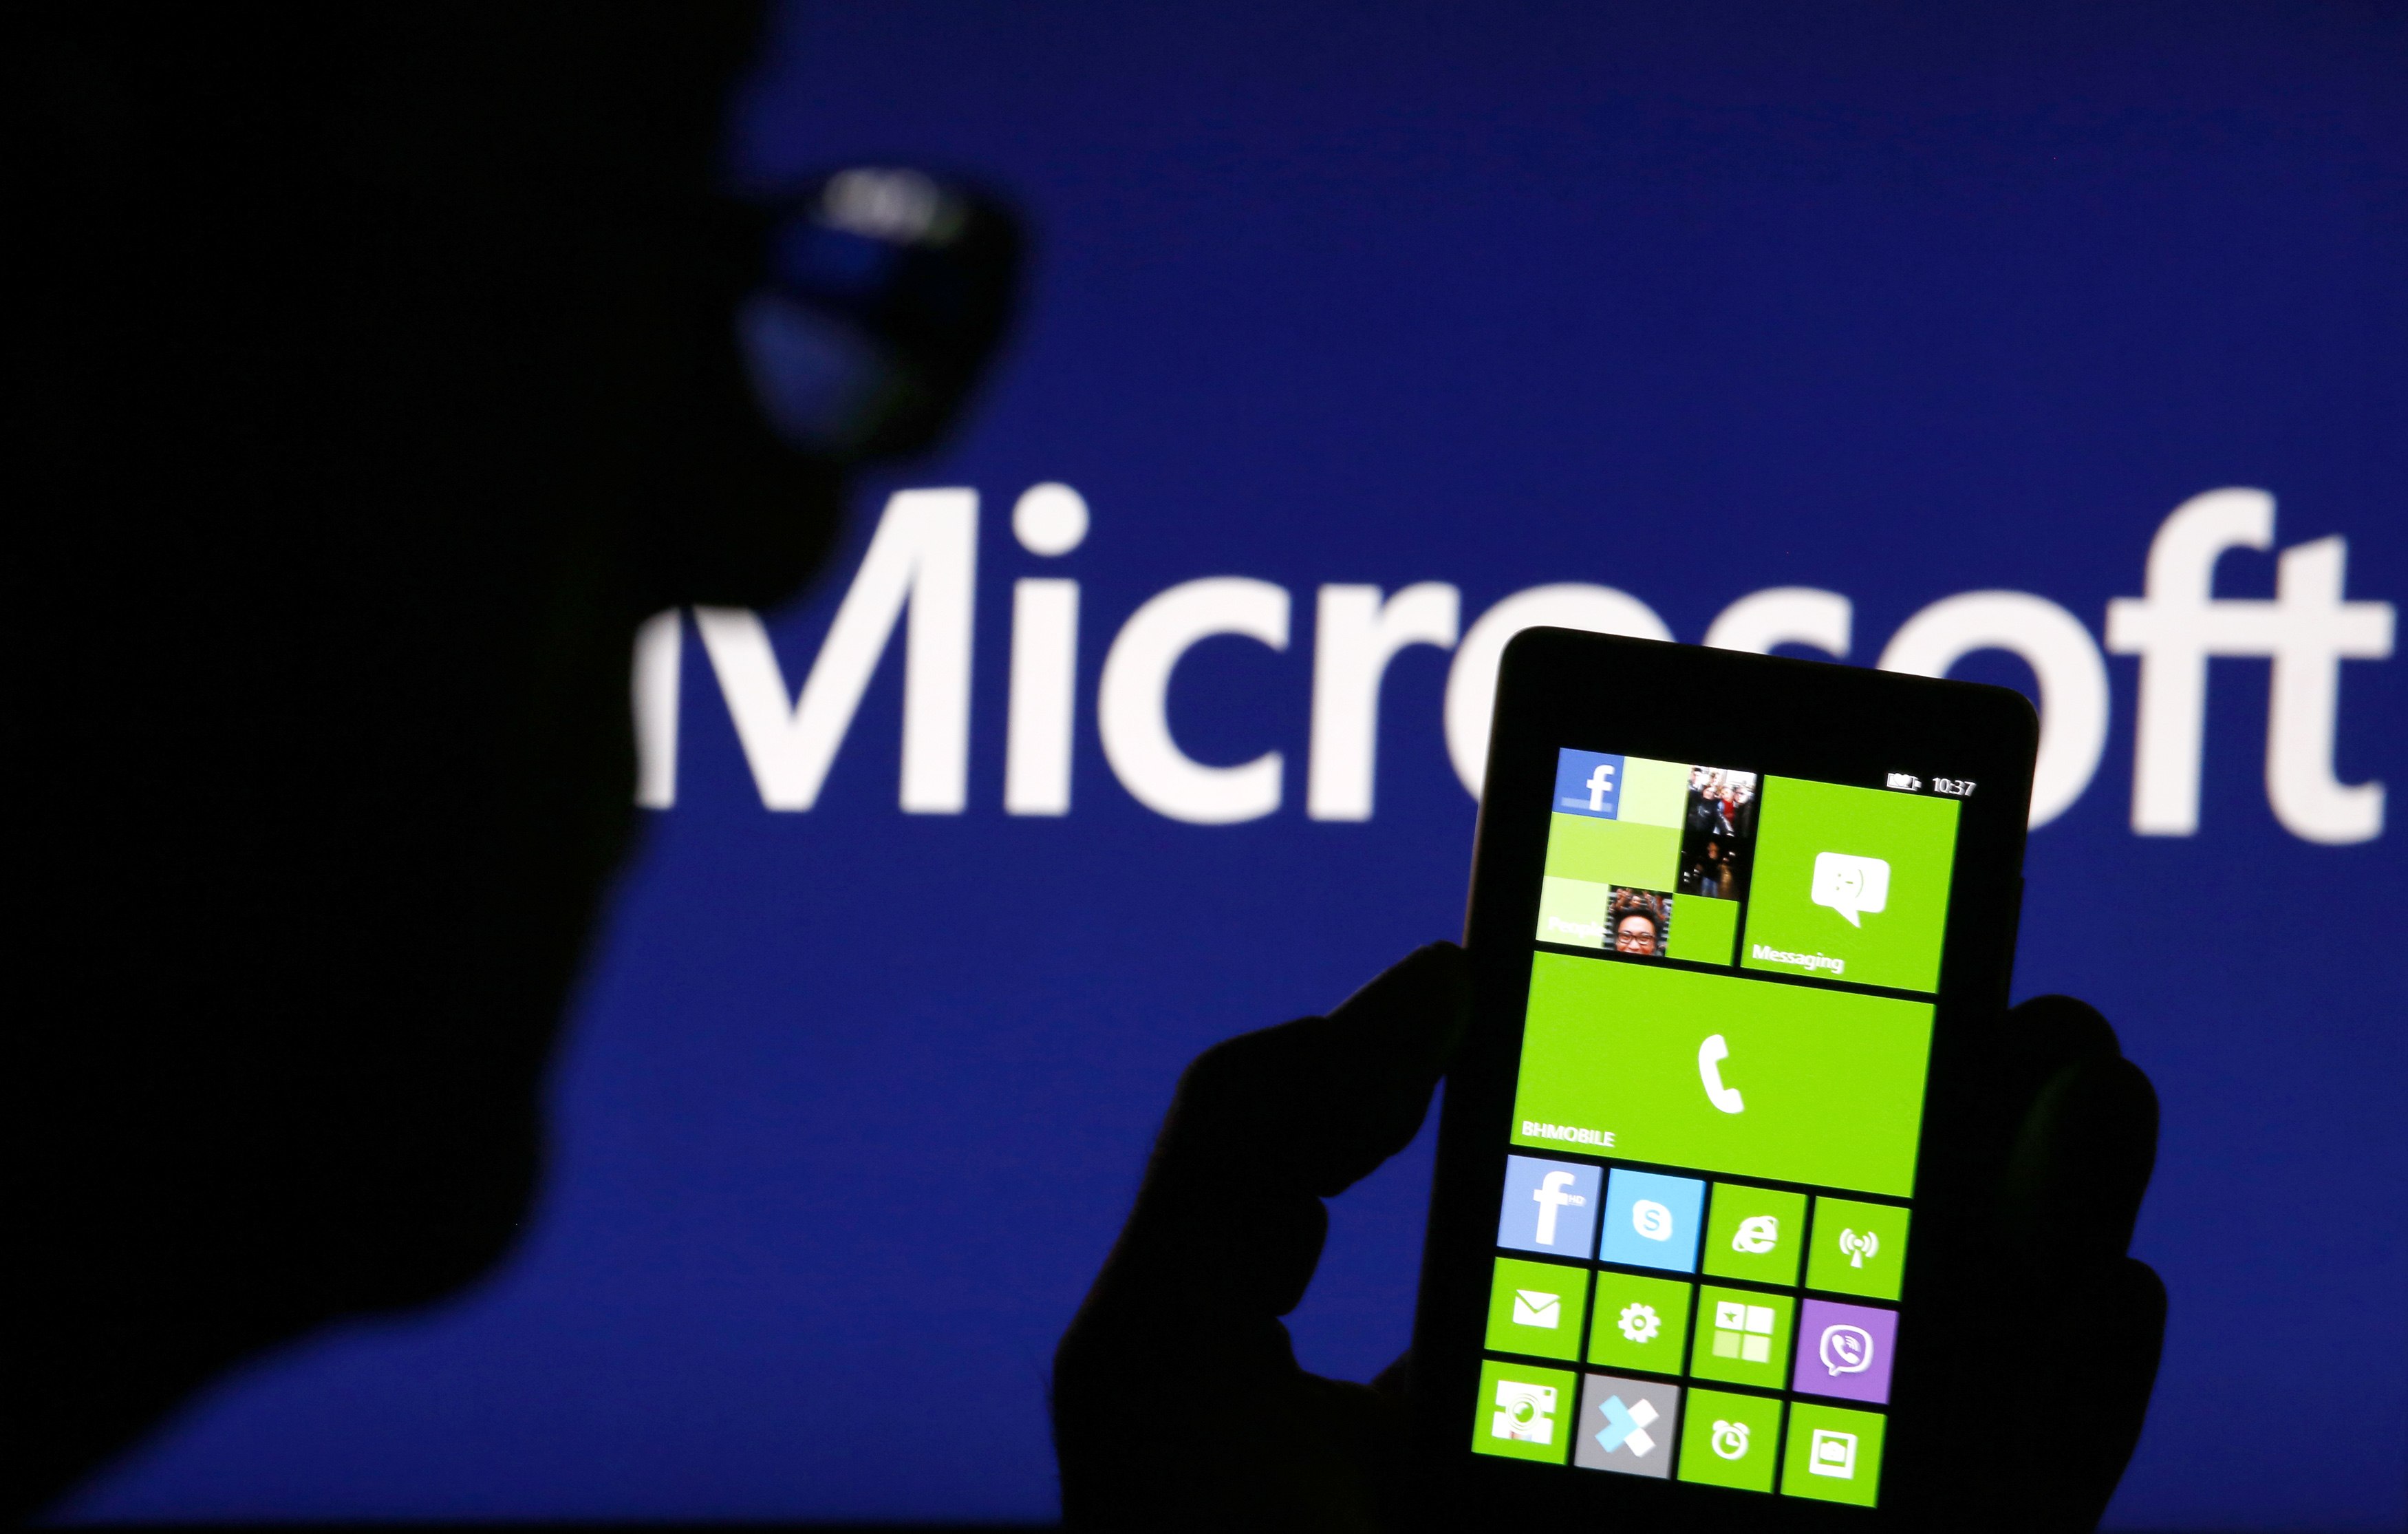 Η Κομισιόν ενέκρινε την εξαγορά της Nokia από τη Microsoft